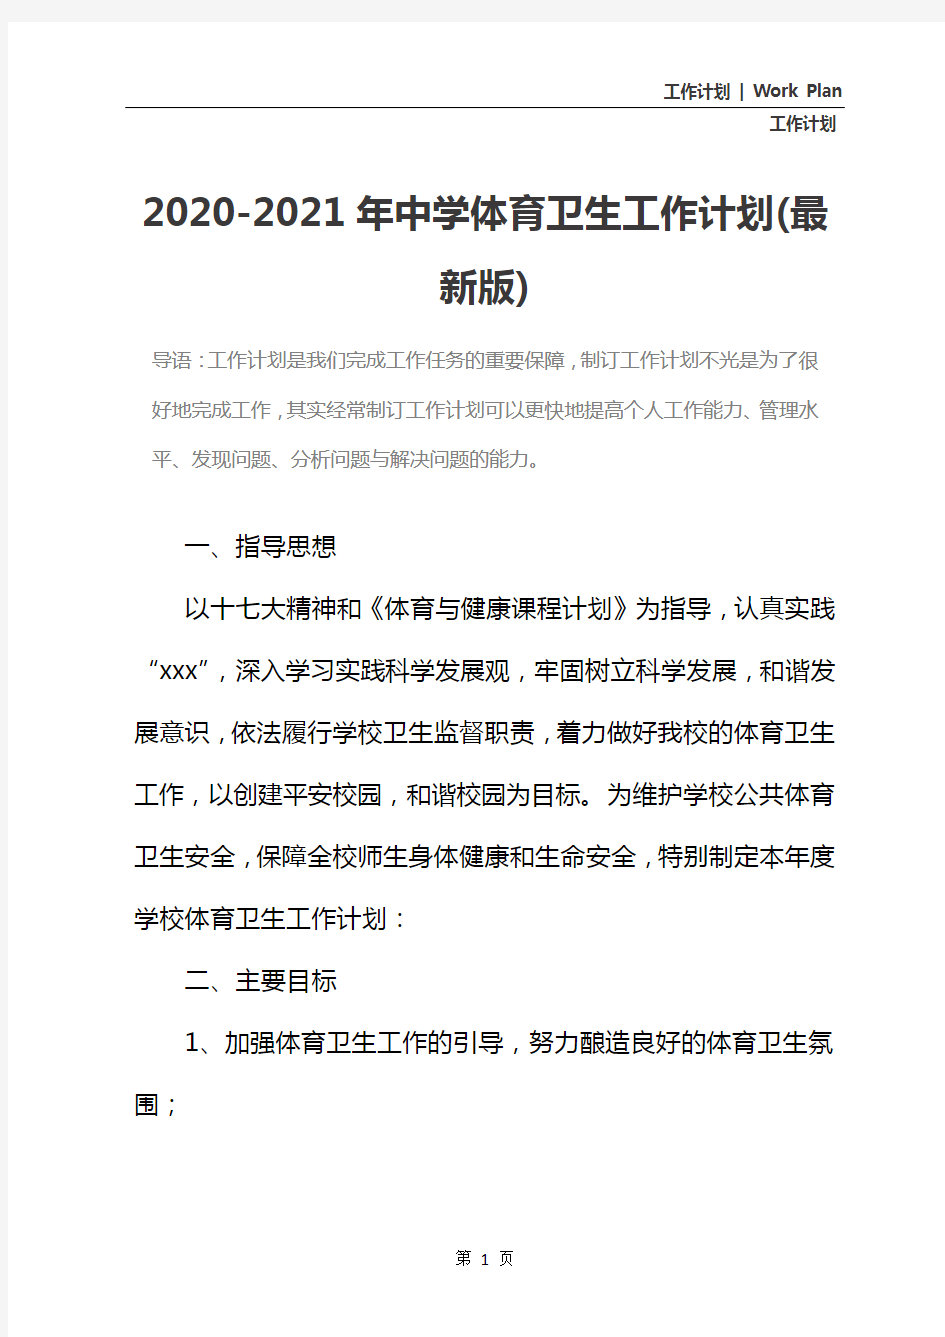 2020-2021年中学体育卫生工作计划(最新版)